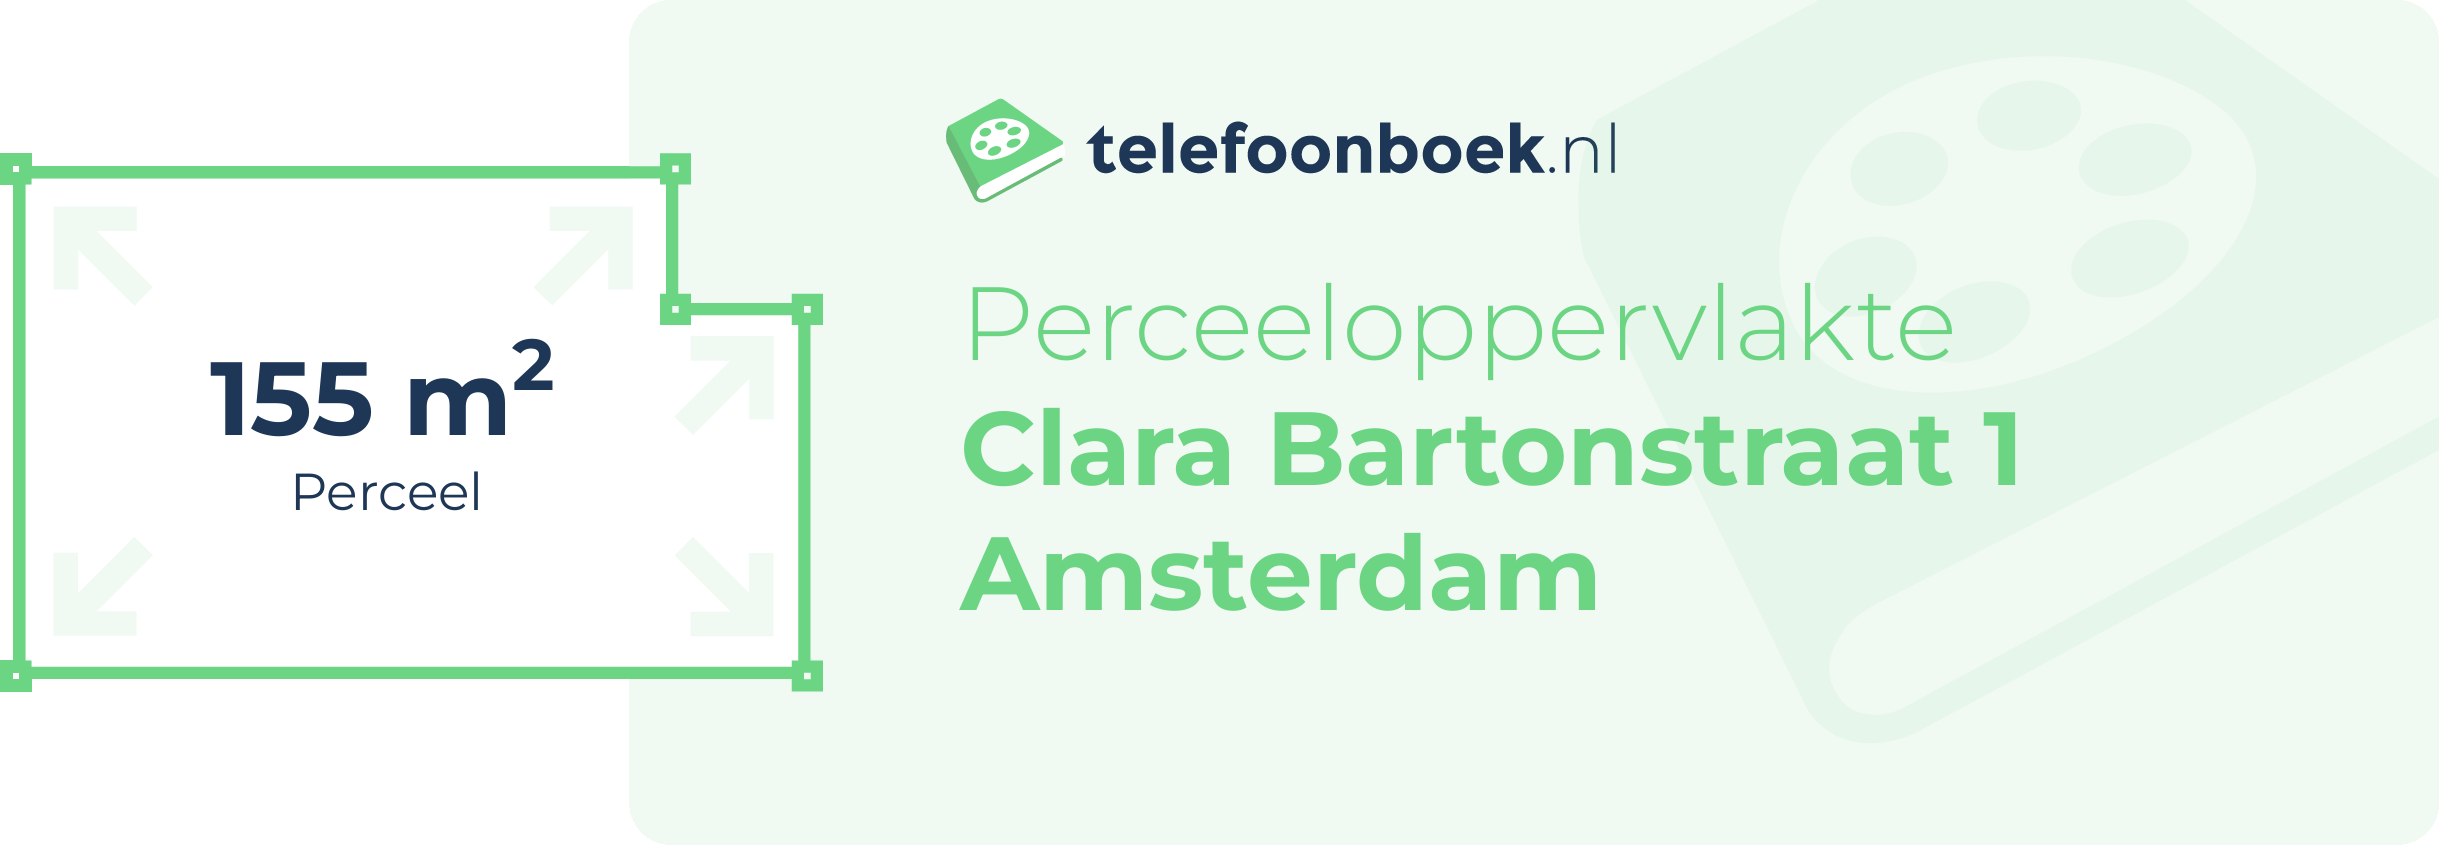 Perceeloppervlakte Clara Bartonstraat 1 Amsterdam